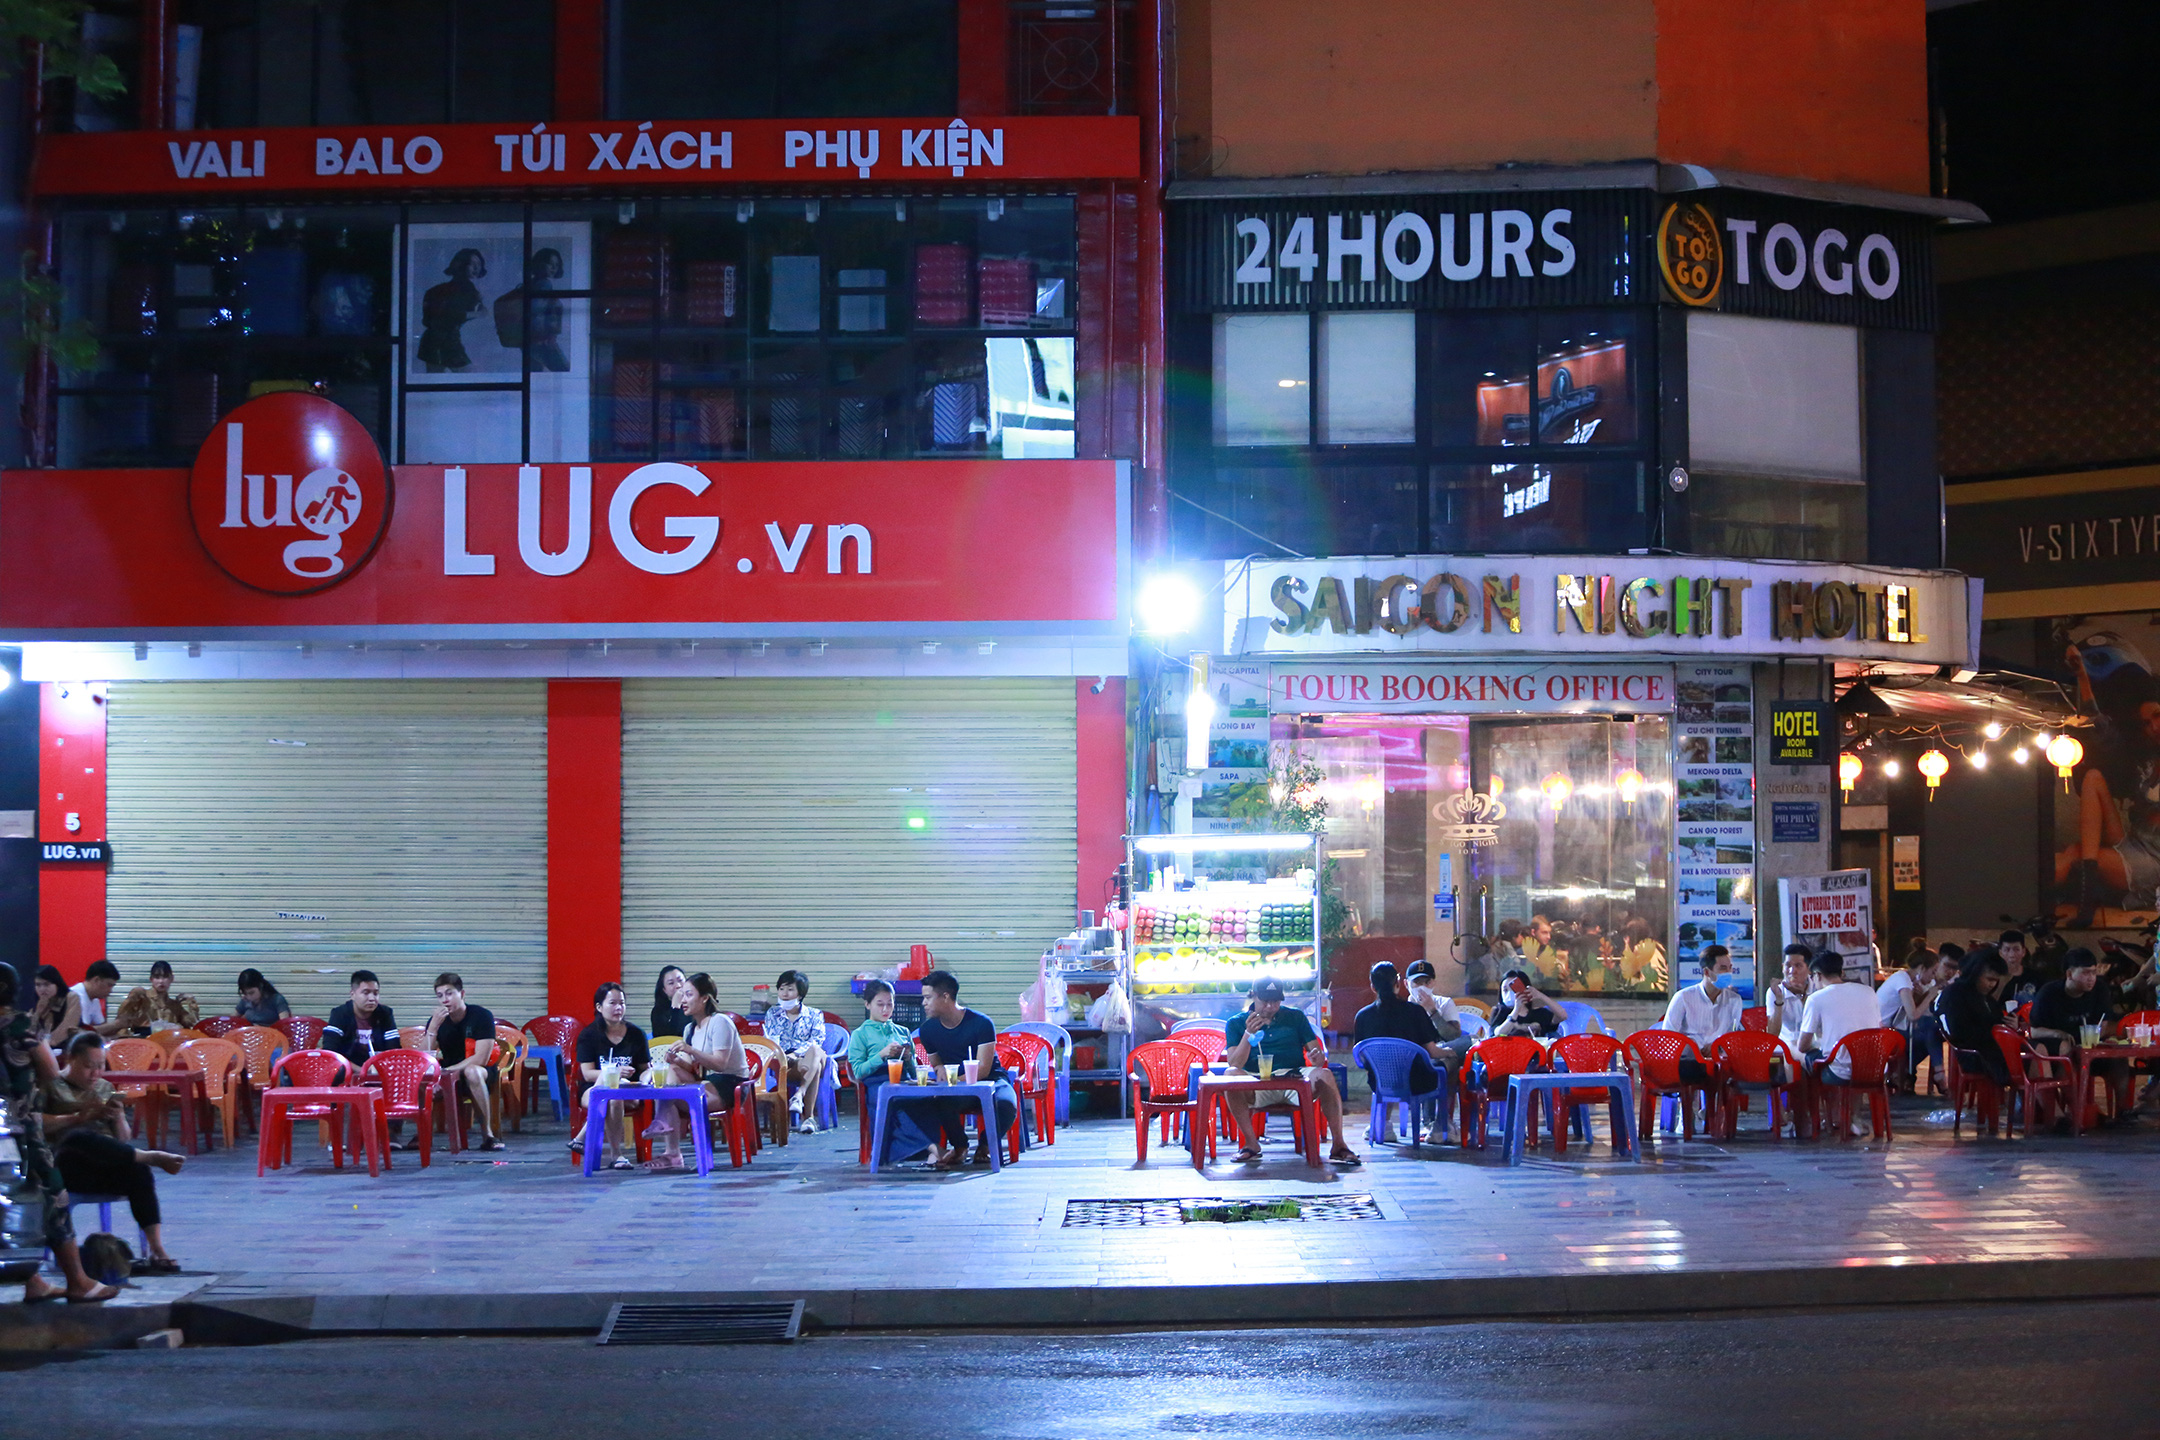 Sài Gòn vắng lặng sau khi nhà hàng, phòng gym, salon tóc đóng cửa, nhưng lác đác quán xá vỉa hè đông vui - Ảnh 8.